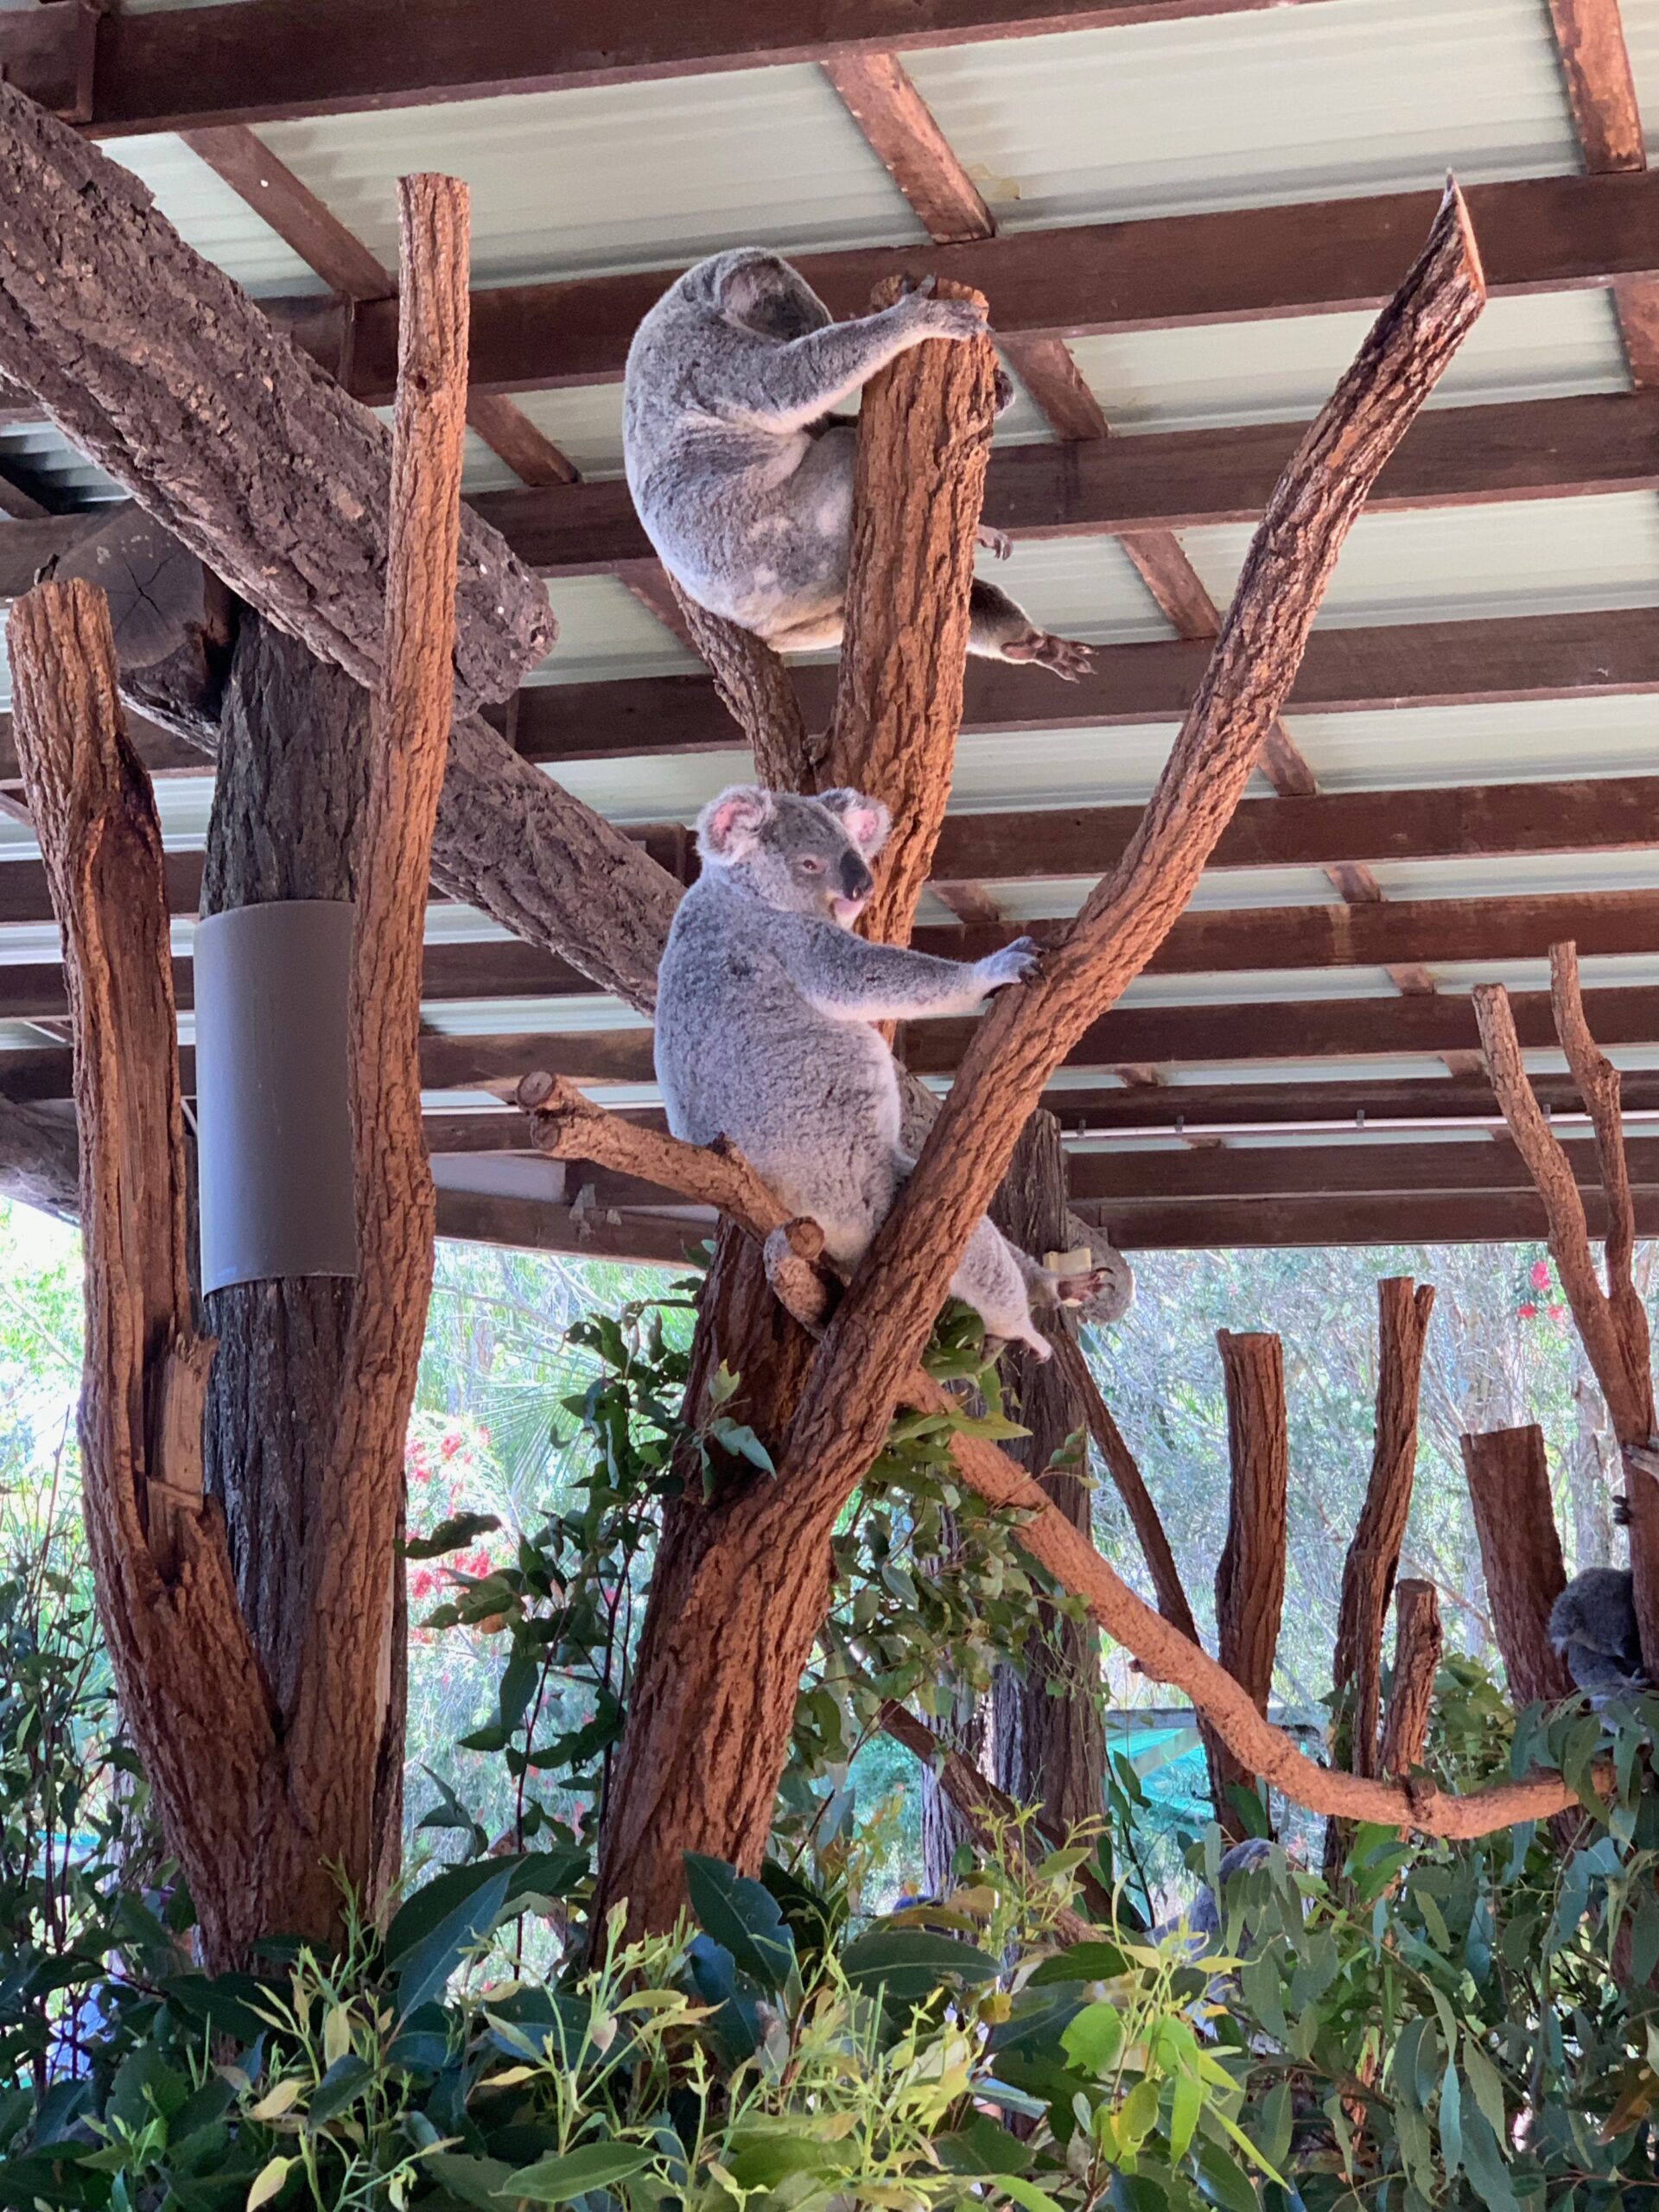 Bild: Zwei Koalas die an einem Baum hängen, Australien